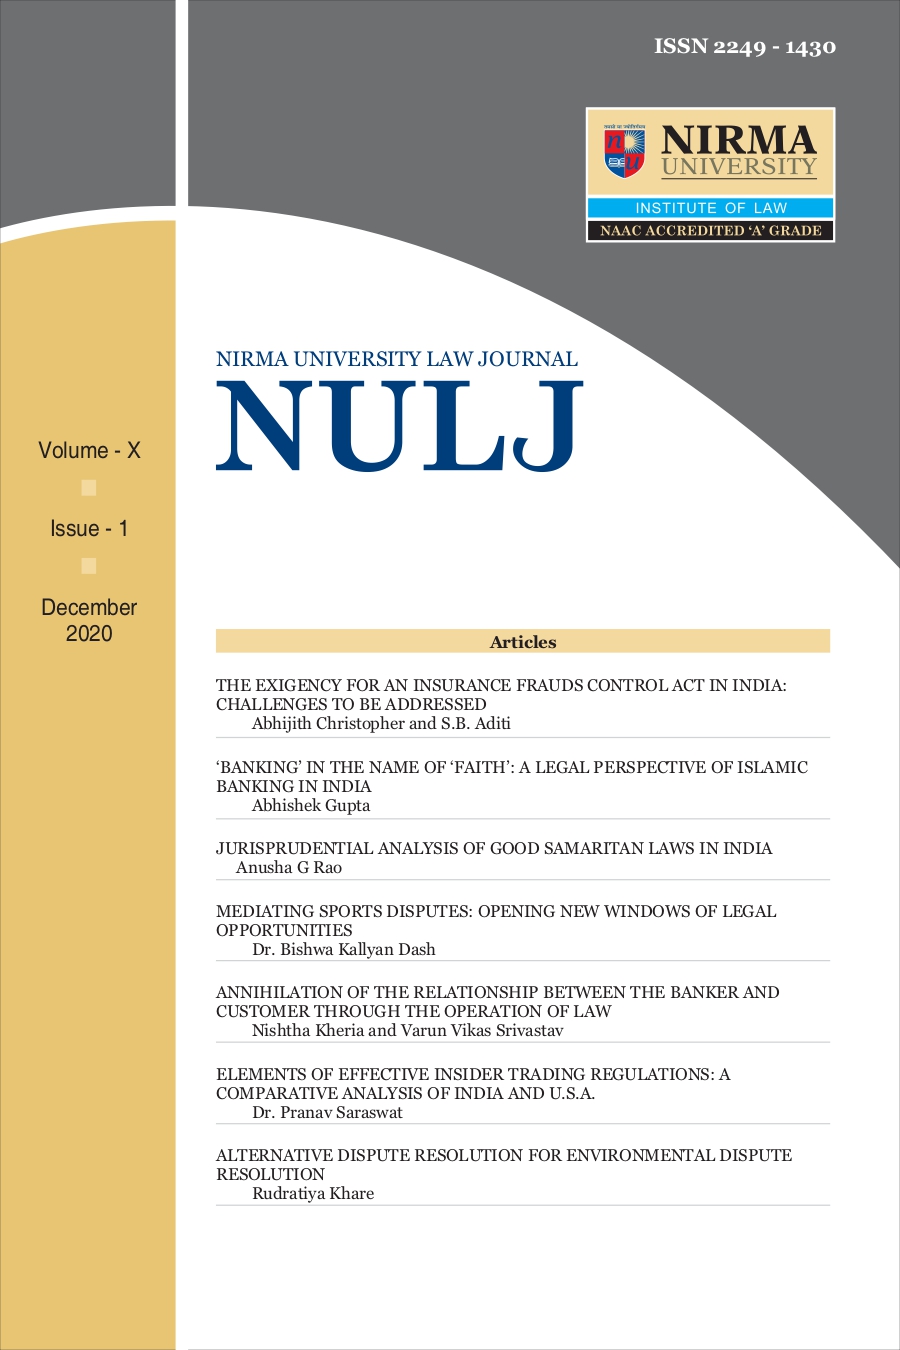 NULJ Volume X, Issue 1 (December 2020)